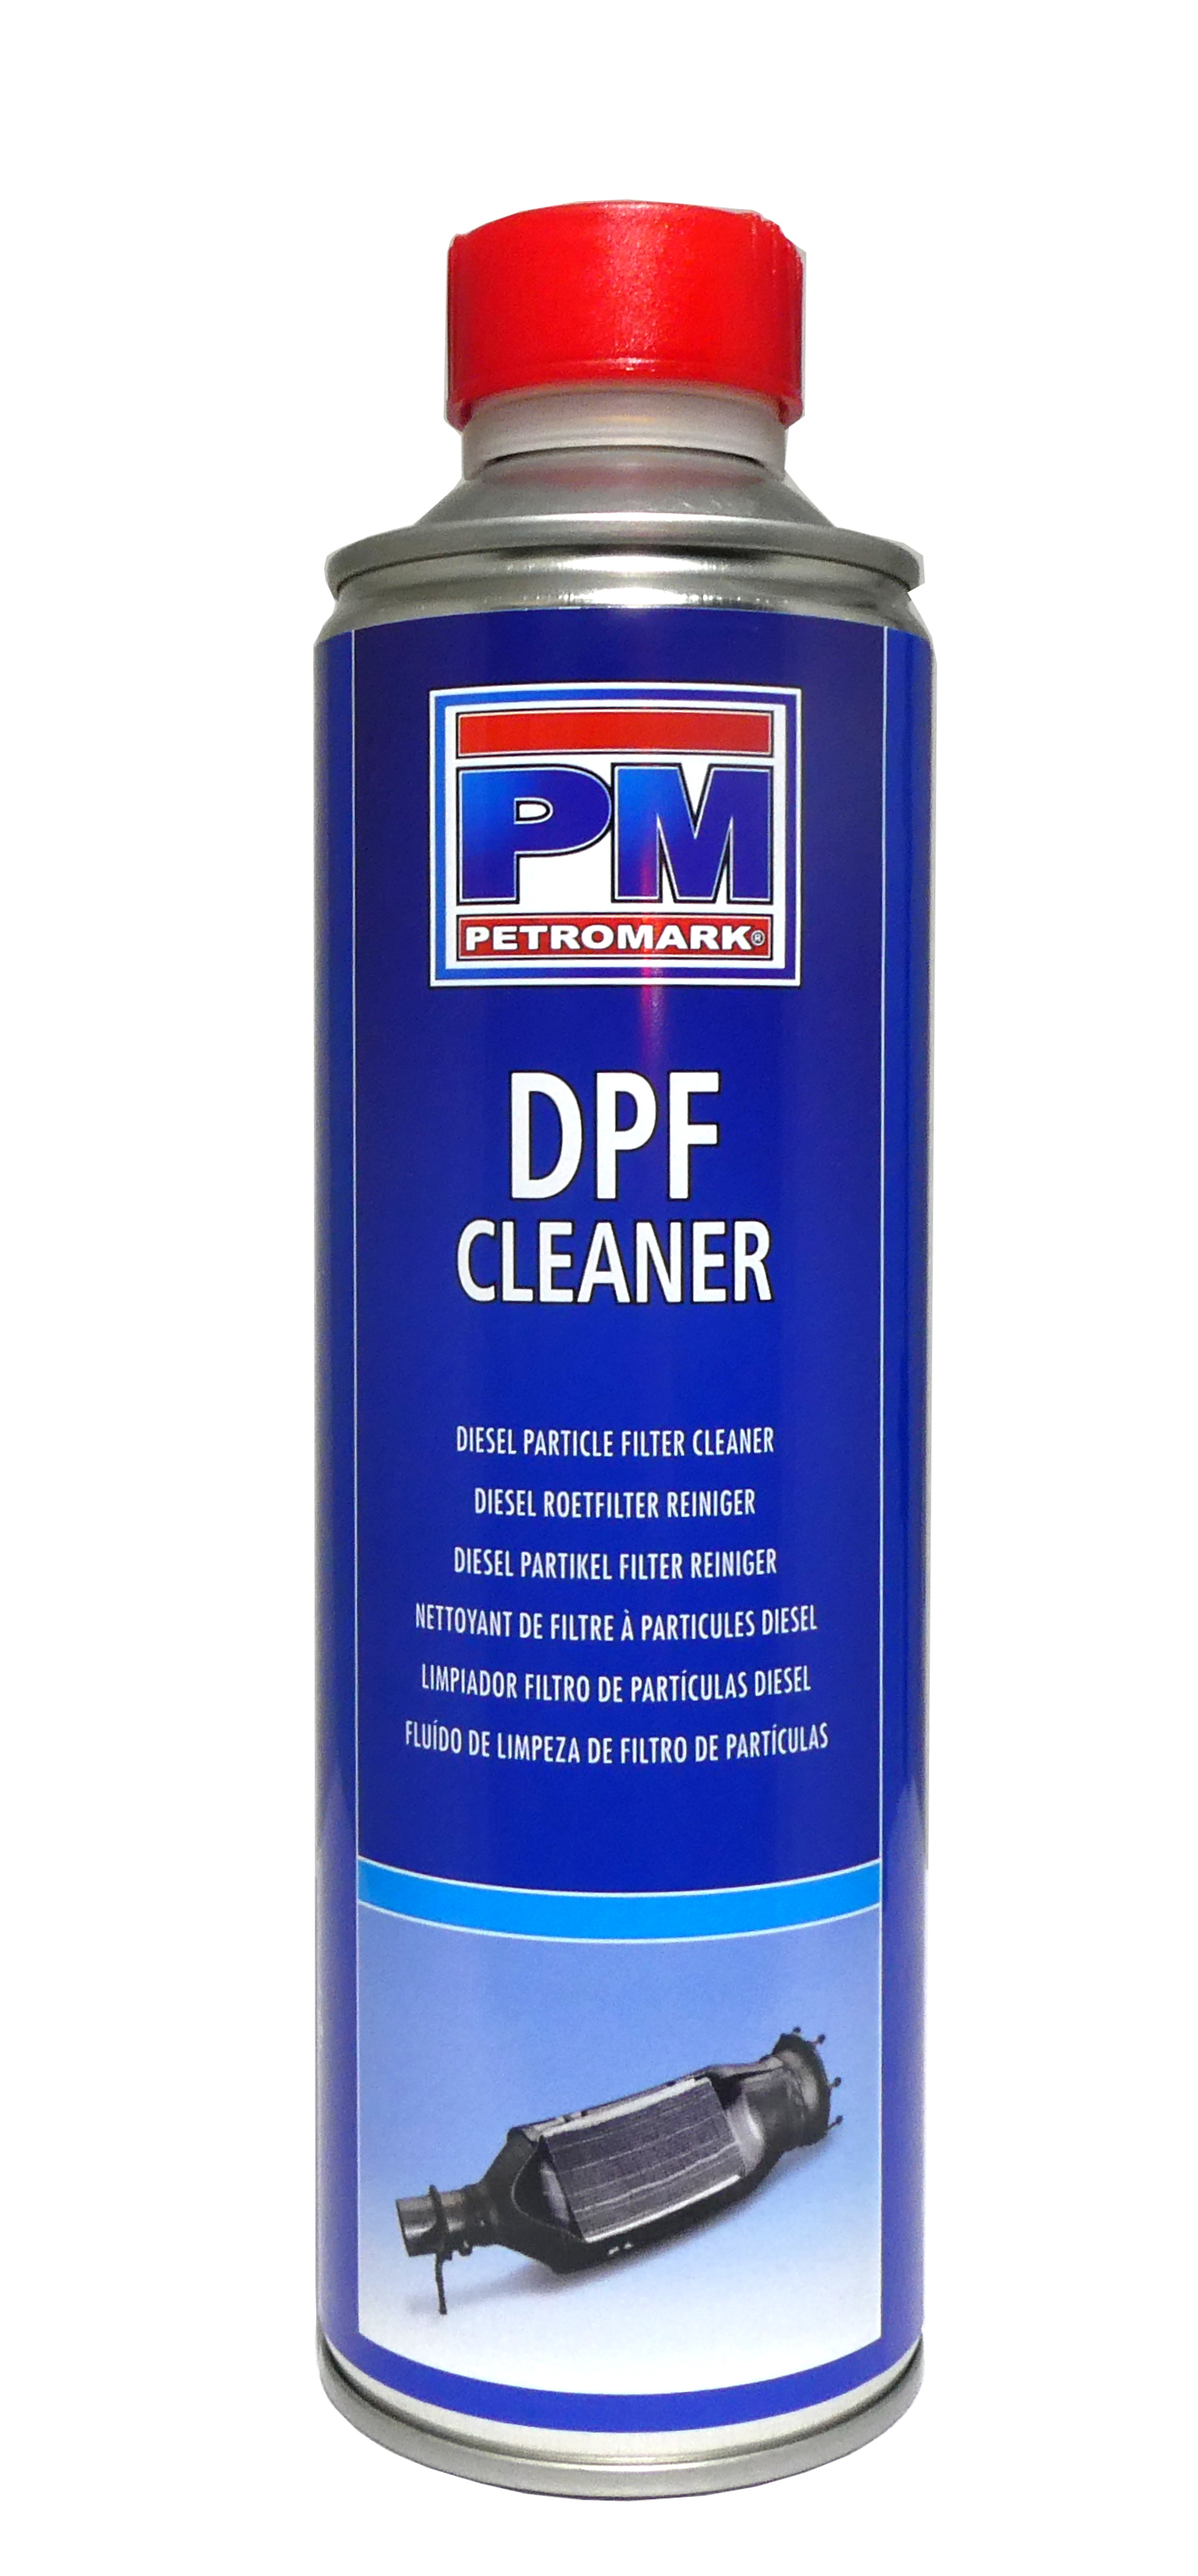 DPF Cleaner Pro, Brandstofsysteemreiniger